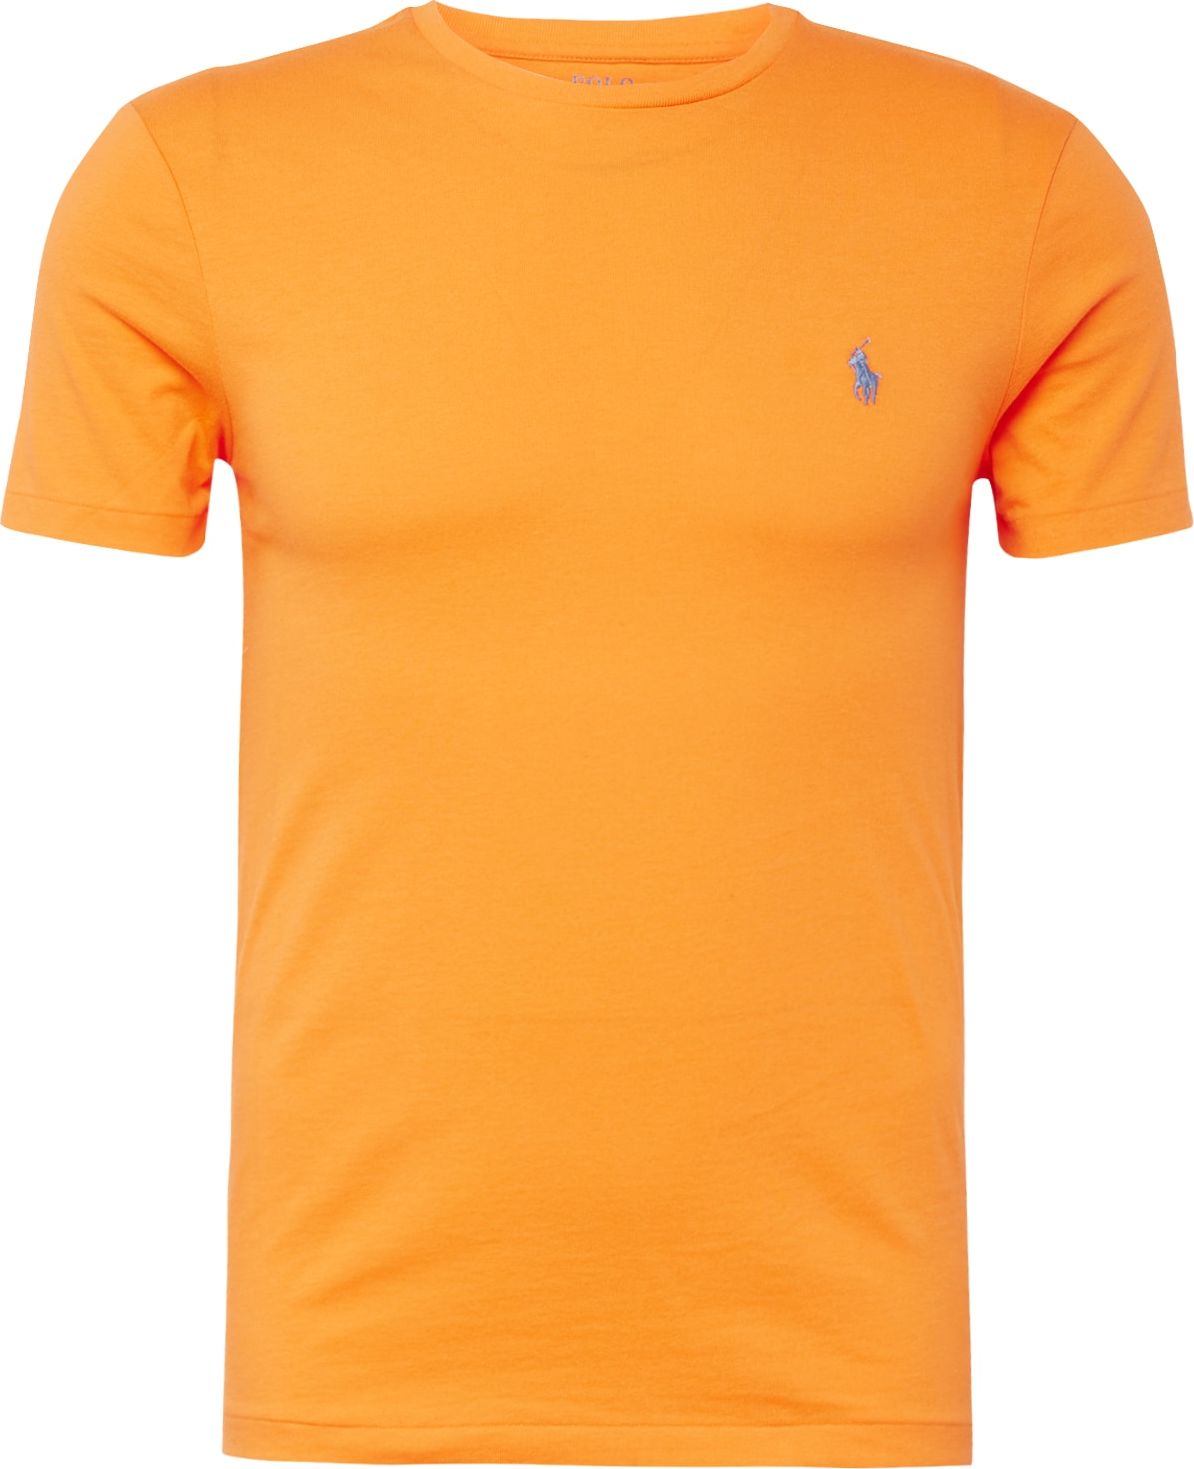 Tričko Polo Ralph Lauren nebeská modř / oranžová